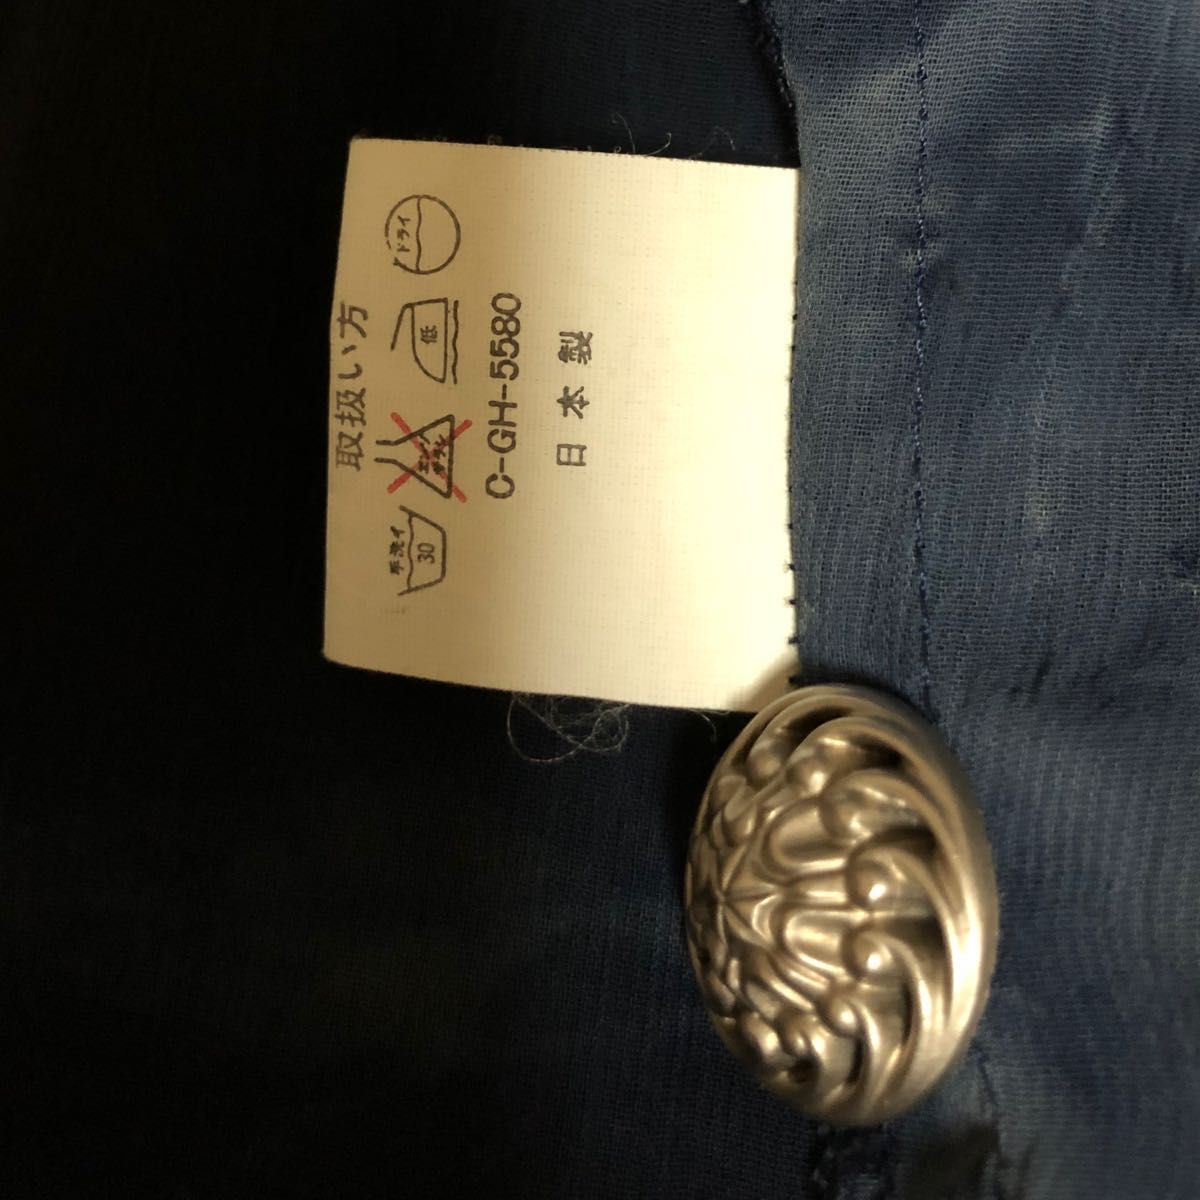 【昭和レトロ】【SODAI】薄手のジャケット 軽めの羽織 シャツ ブラウス シアーシャツ シースルー 透けブラウス 古着 日本製